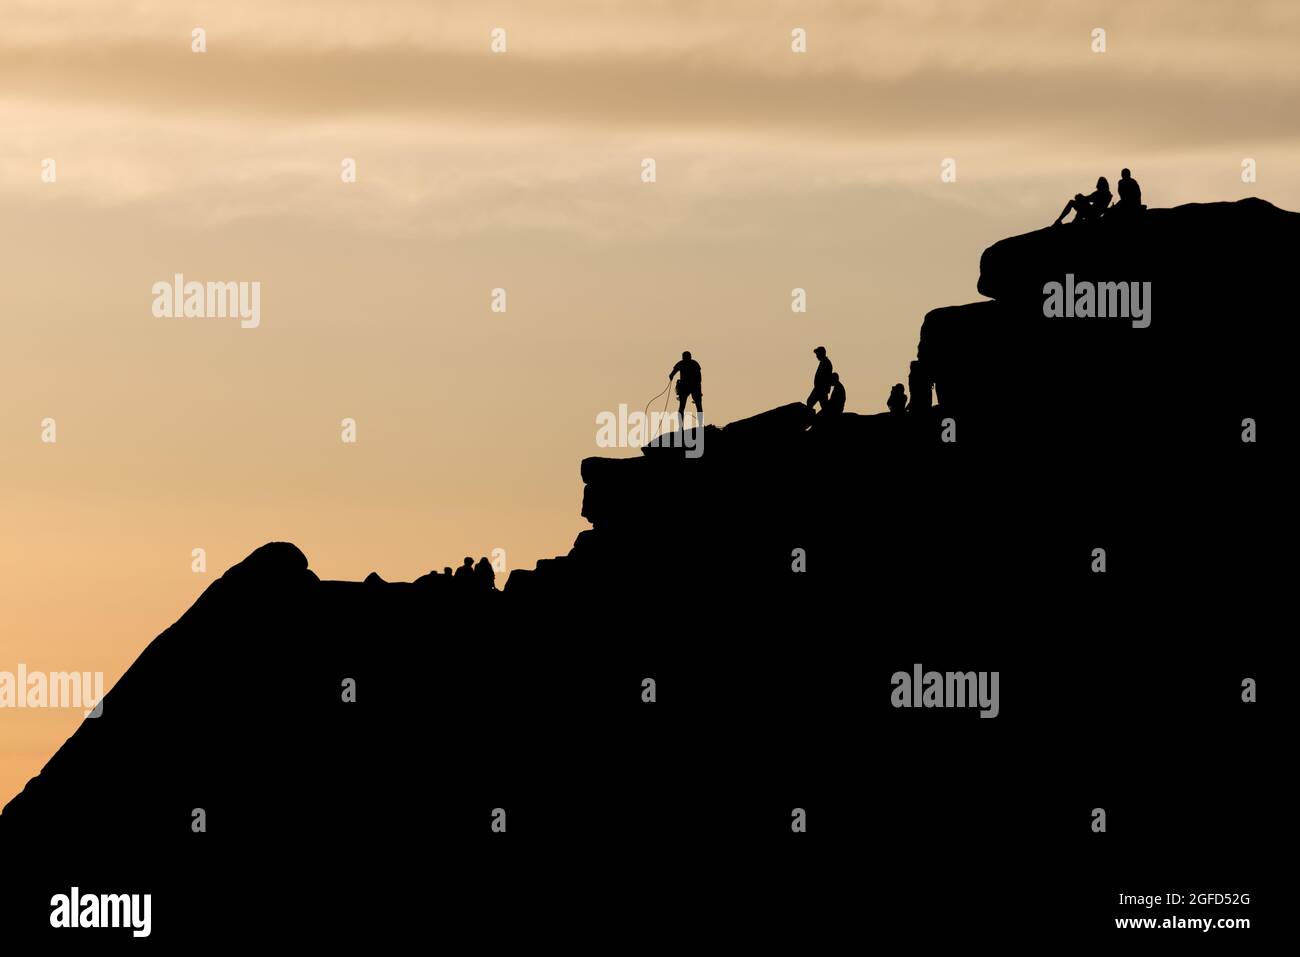 Dramatische Silhouette-Szene, in der ein Kletterer seine Seile an der Spitze einer markanten Felsformation sortiert. Andere Menschen genießen den Sonnenuntergang und die abgelegene Wildnis. Stockfoto